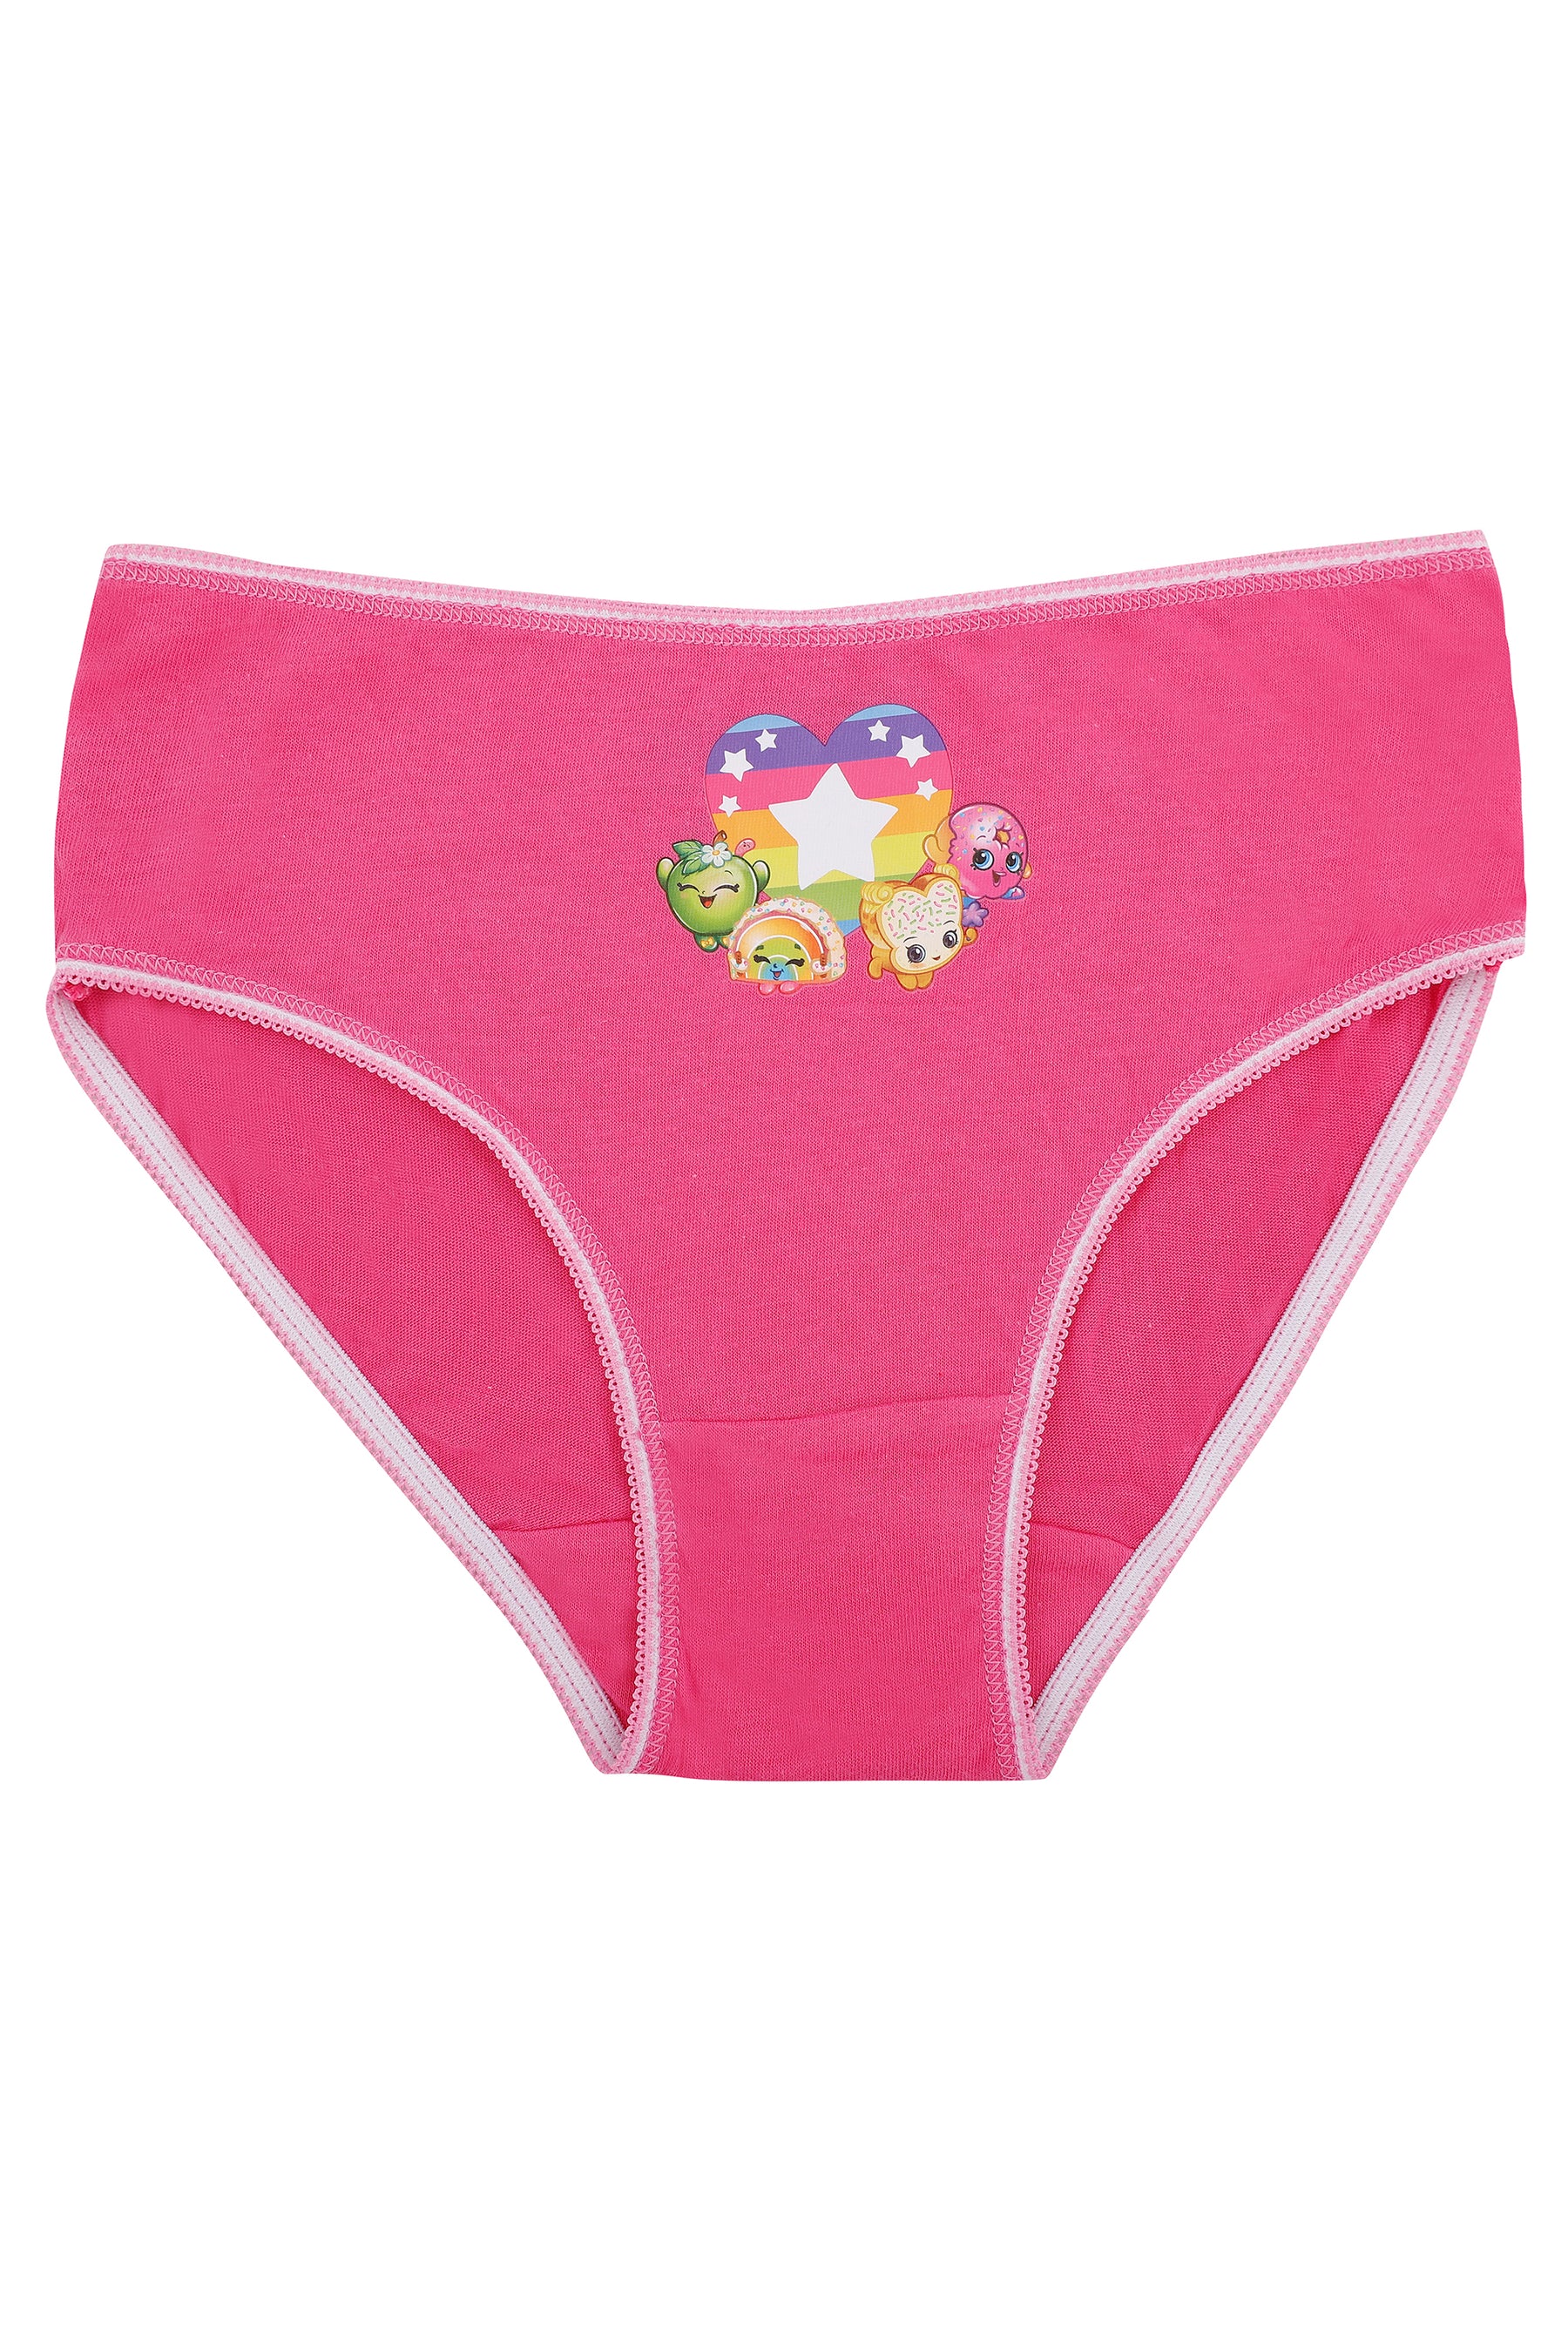 Other, Shopkins Girls Thermal Underwear Set